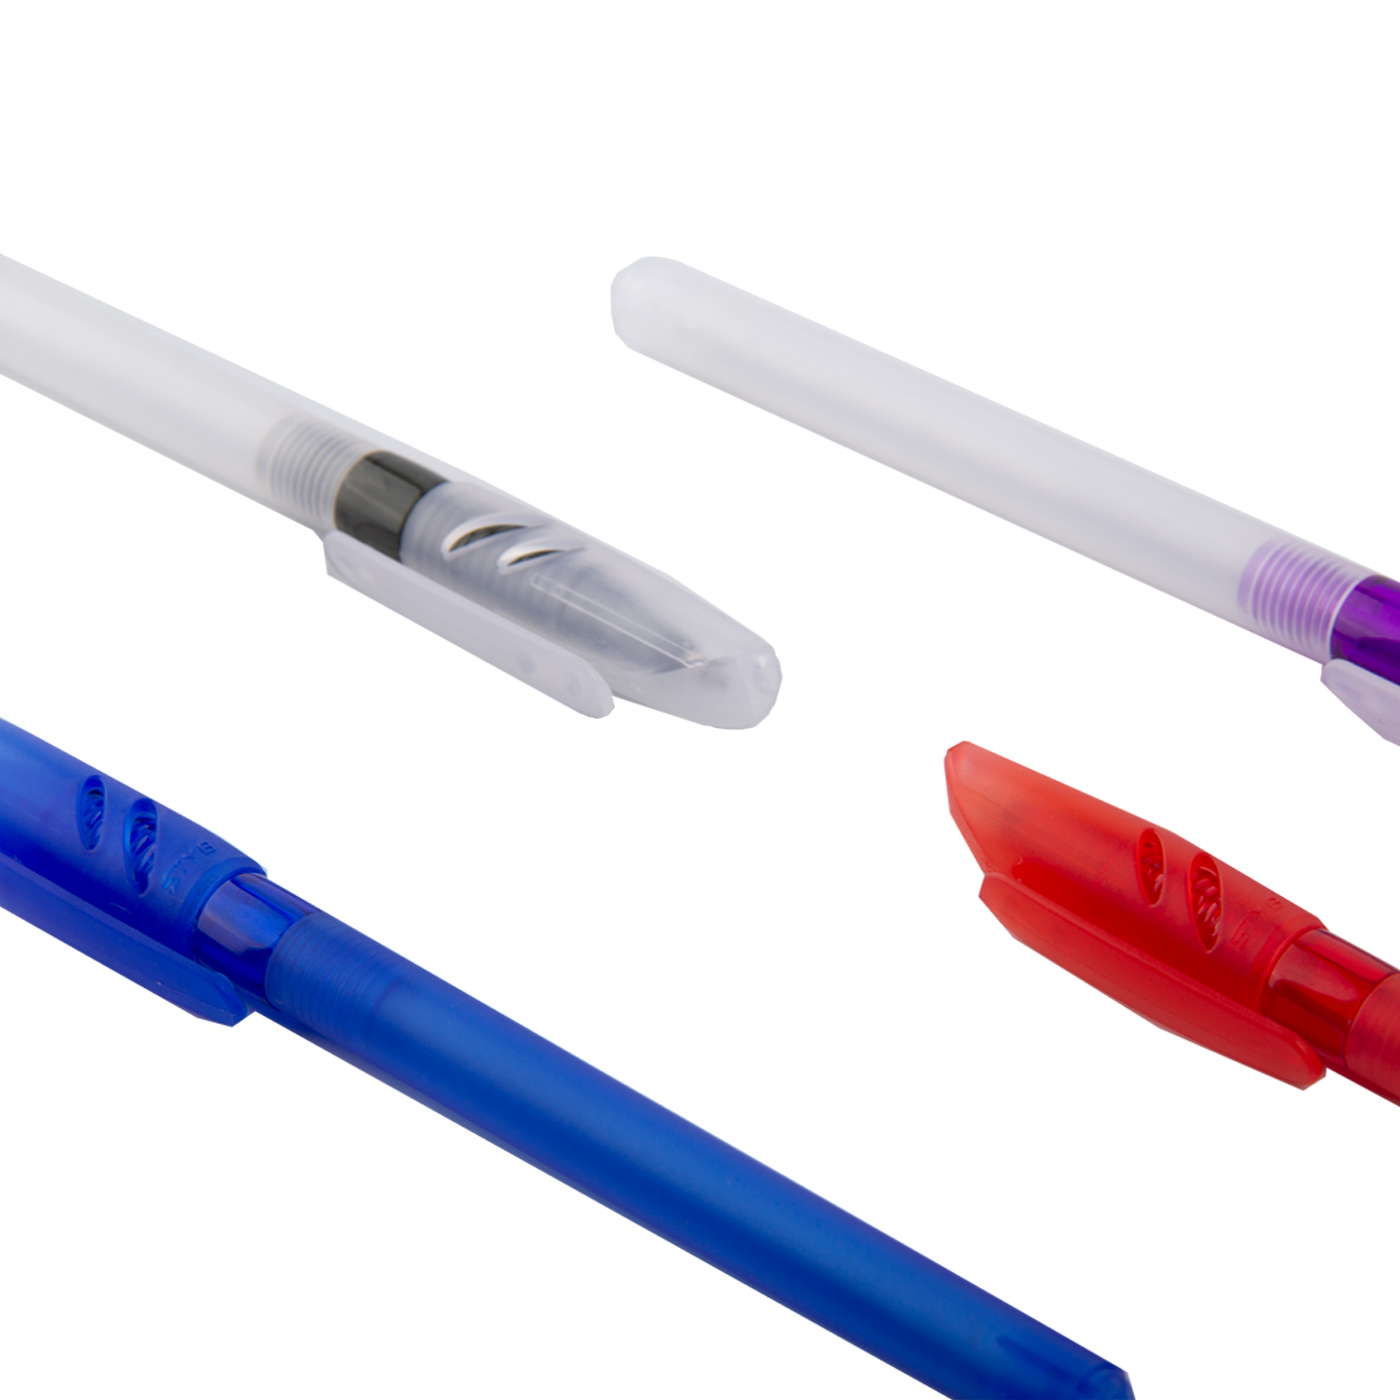 Transparent Plastic Ballpoint Pen With Venture Cap2